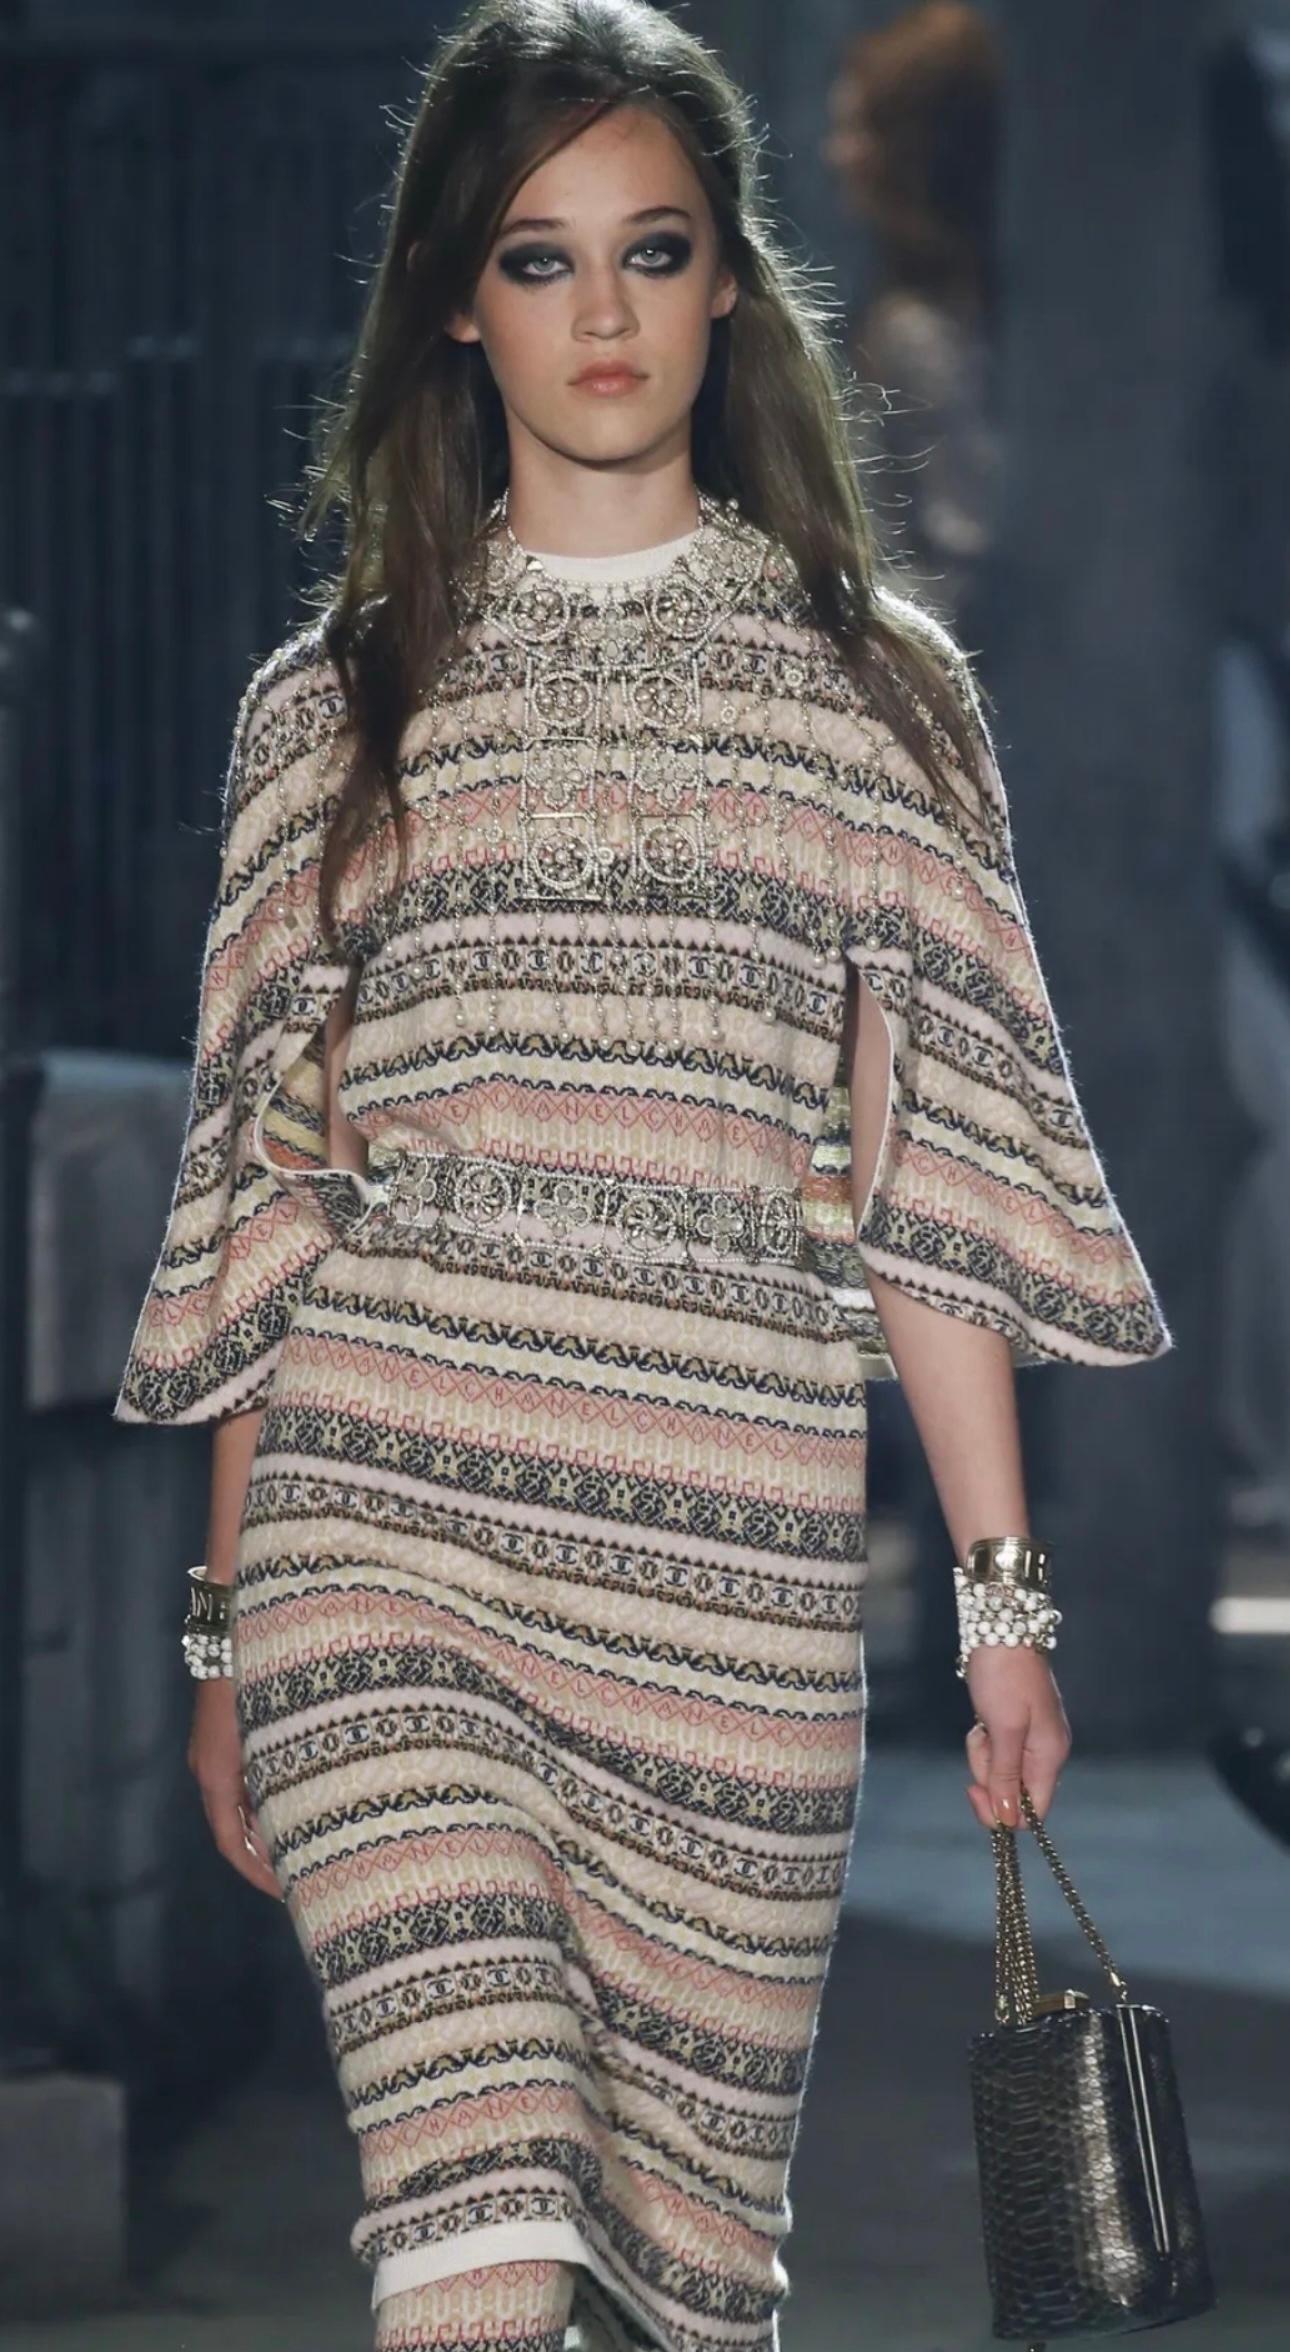 Chanel métiers d’art Paris Rome Pre Fall 2016 cashmere runway maxi dress  For Sale 7